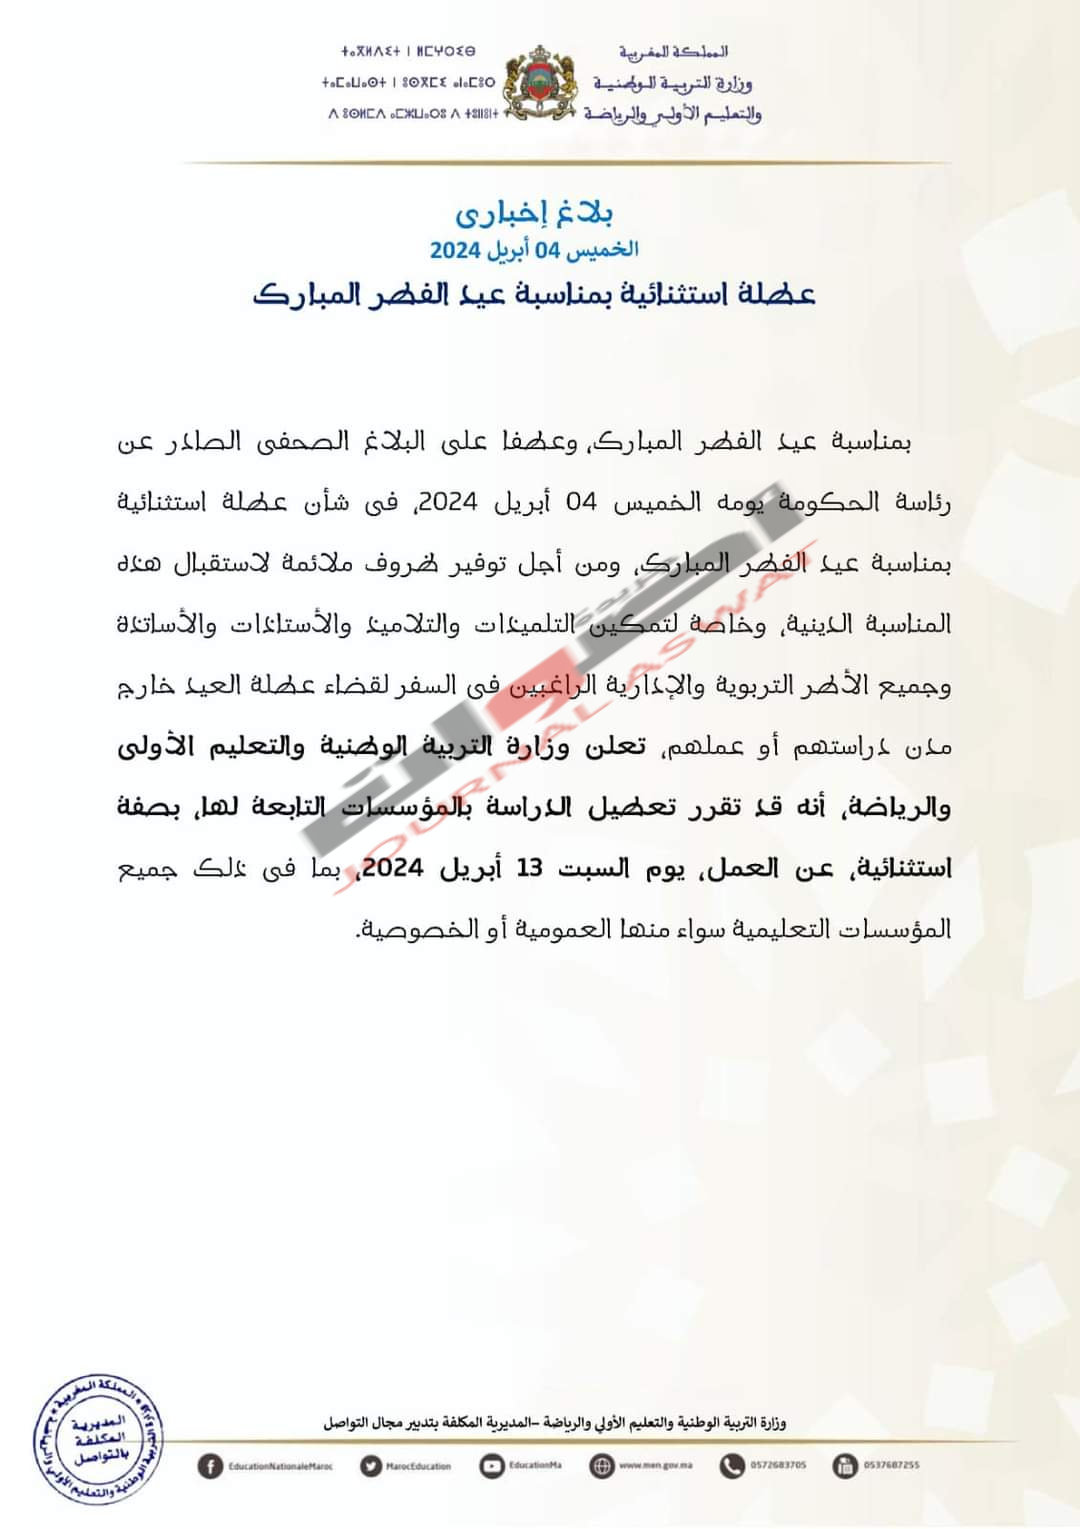 وزارة "بنموسى" تعلن عن عطلة اسثتنالية بمناسبة عيد الفطر المبارك